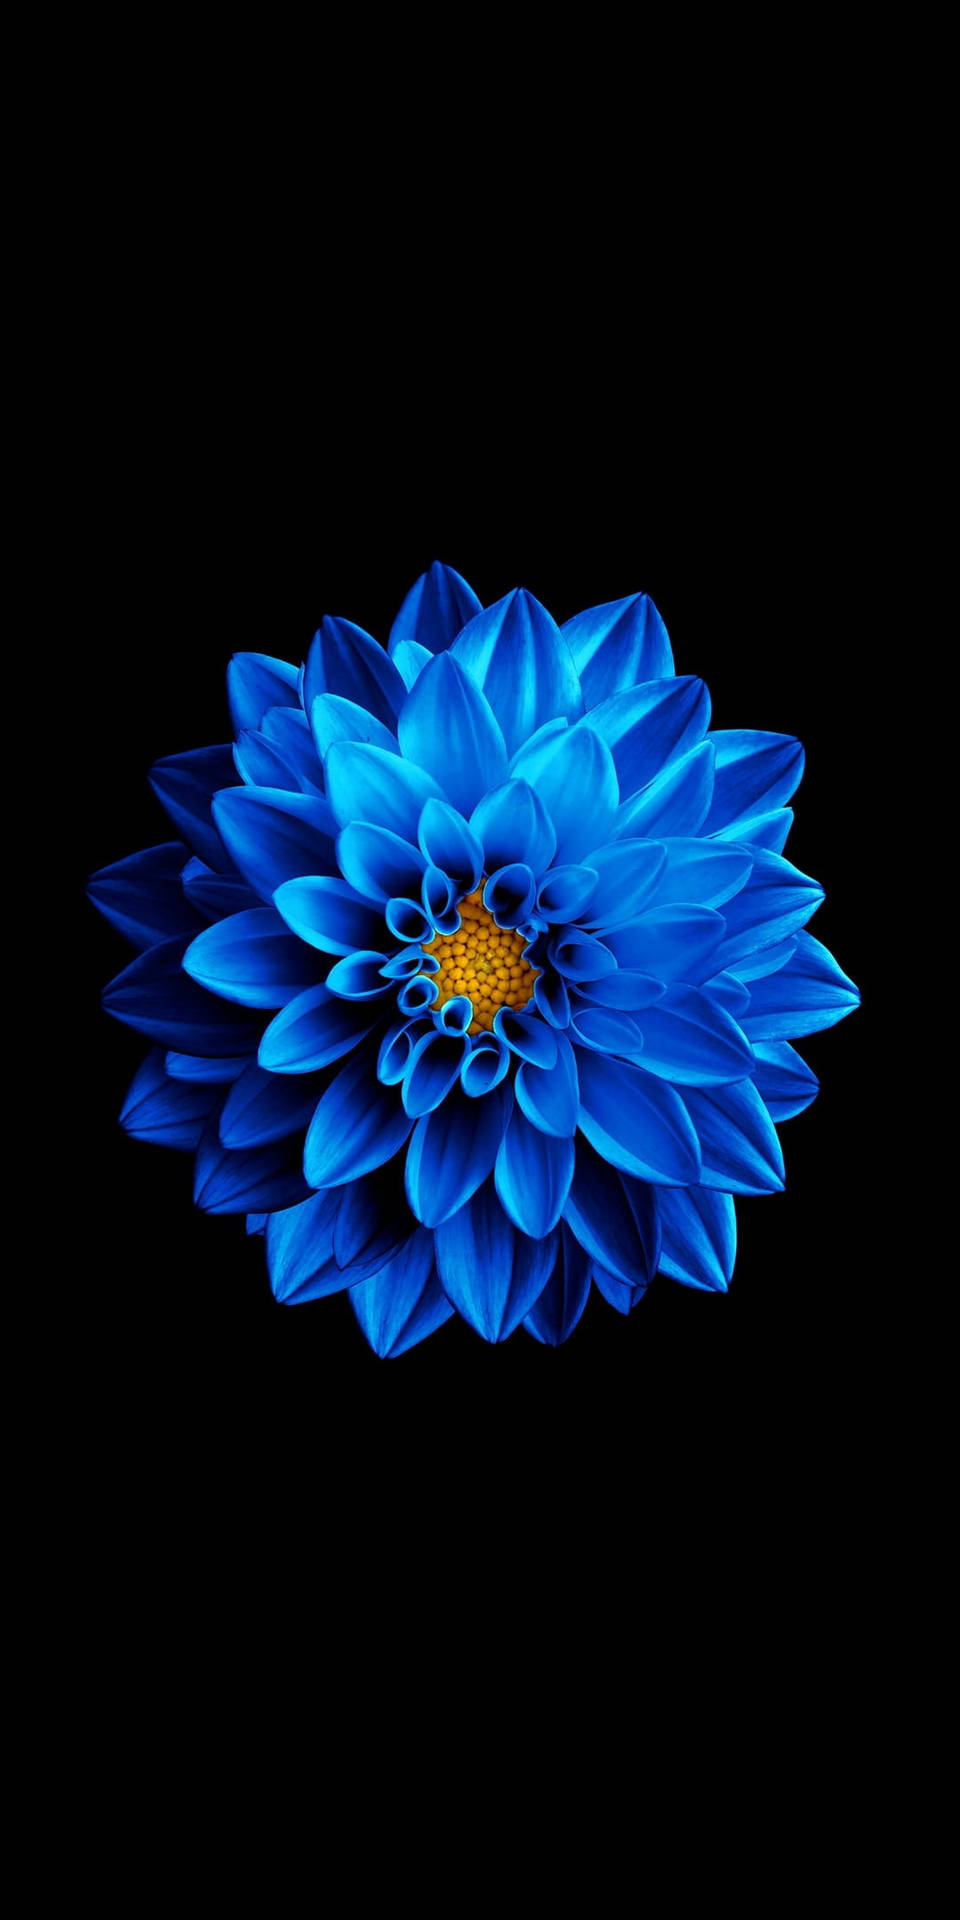 Luminous Blue Flower Oled Phone Background